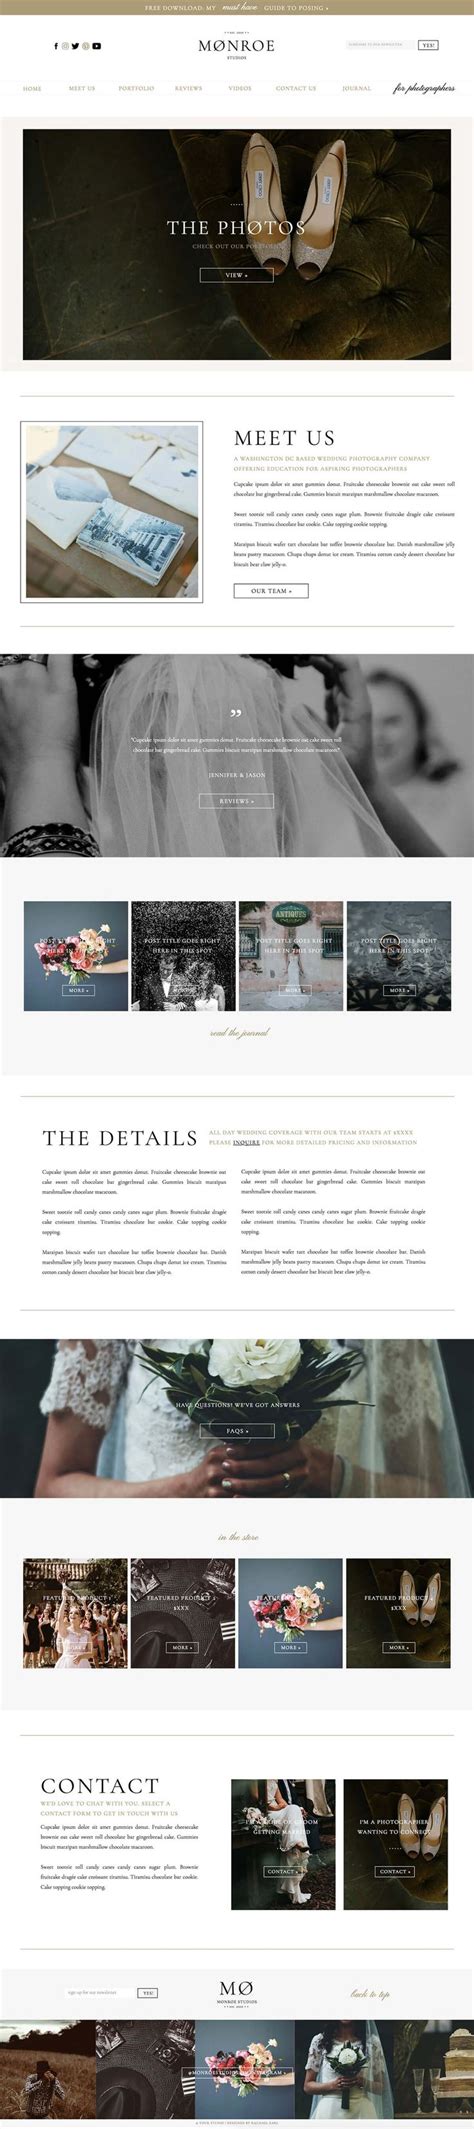 Monroe Desktop Website Design For Showit Photography Website